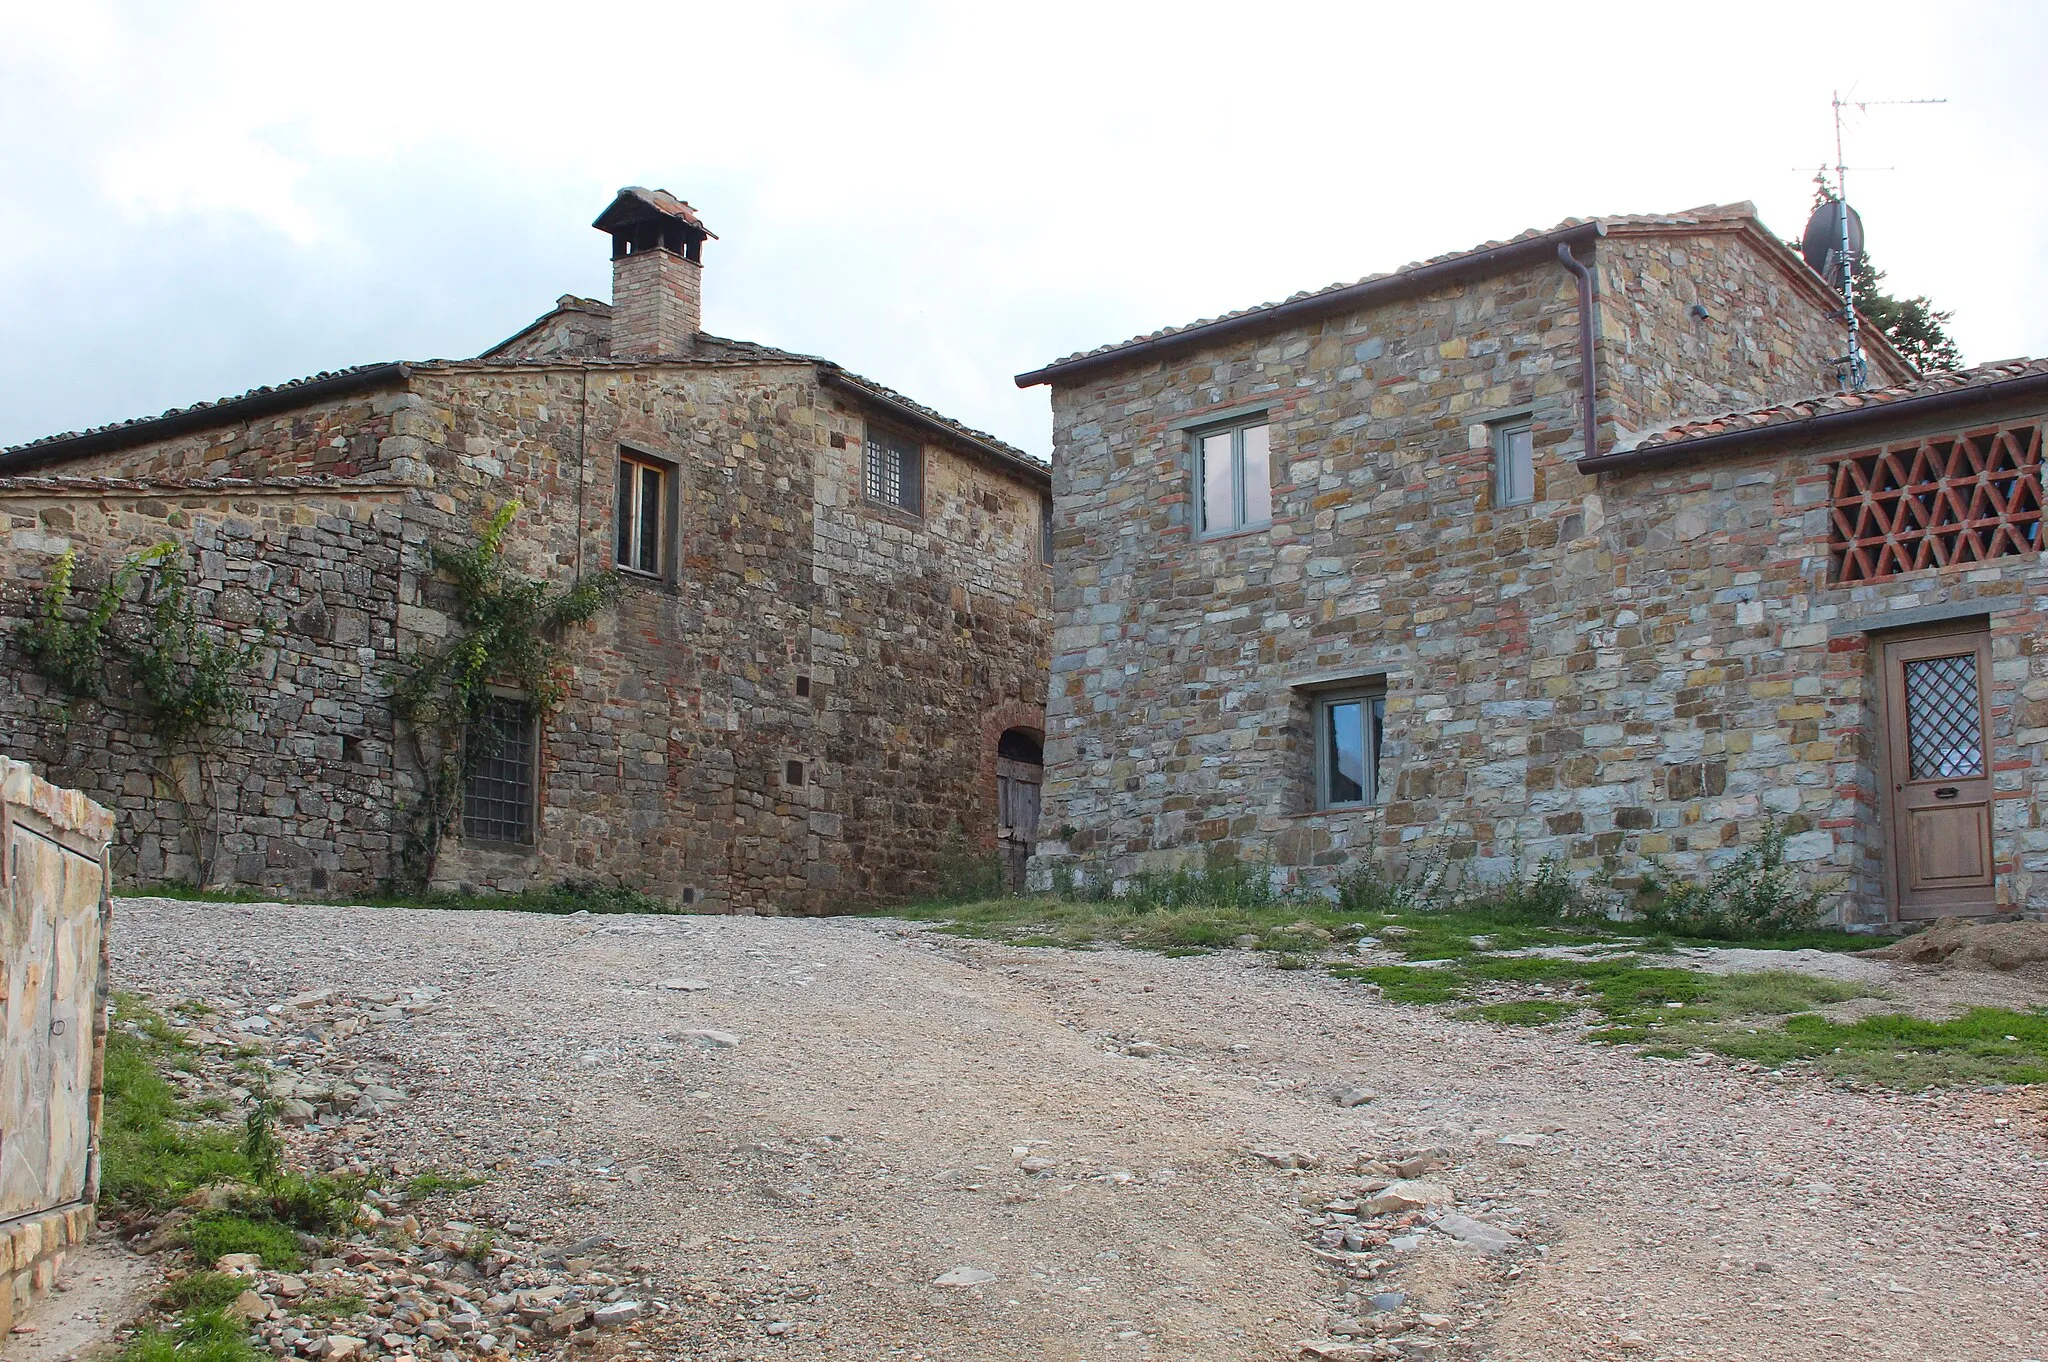 Photo showing: Poggio al Vento, village near Badia a Passignano, municipality of Barberino Tavarnelle, Tuscany, Italy